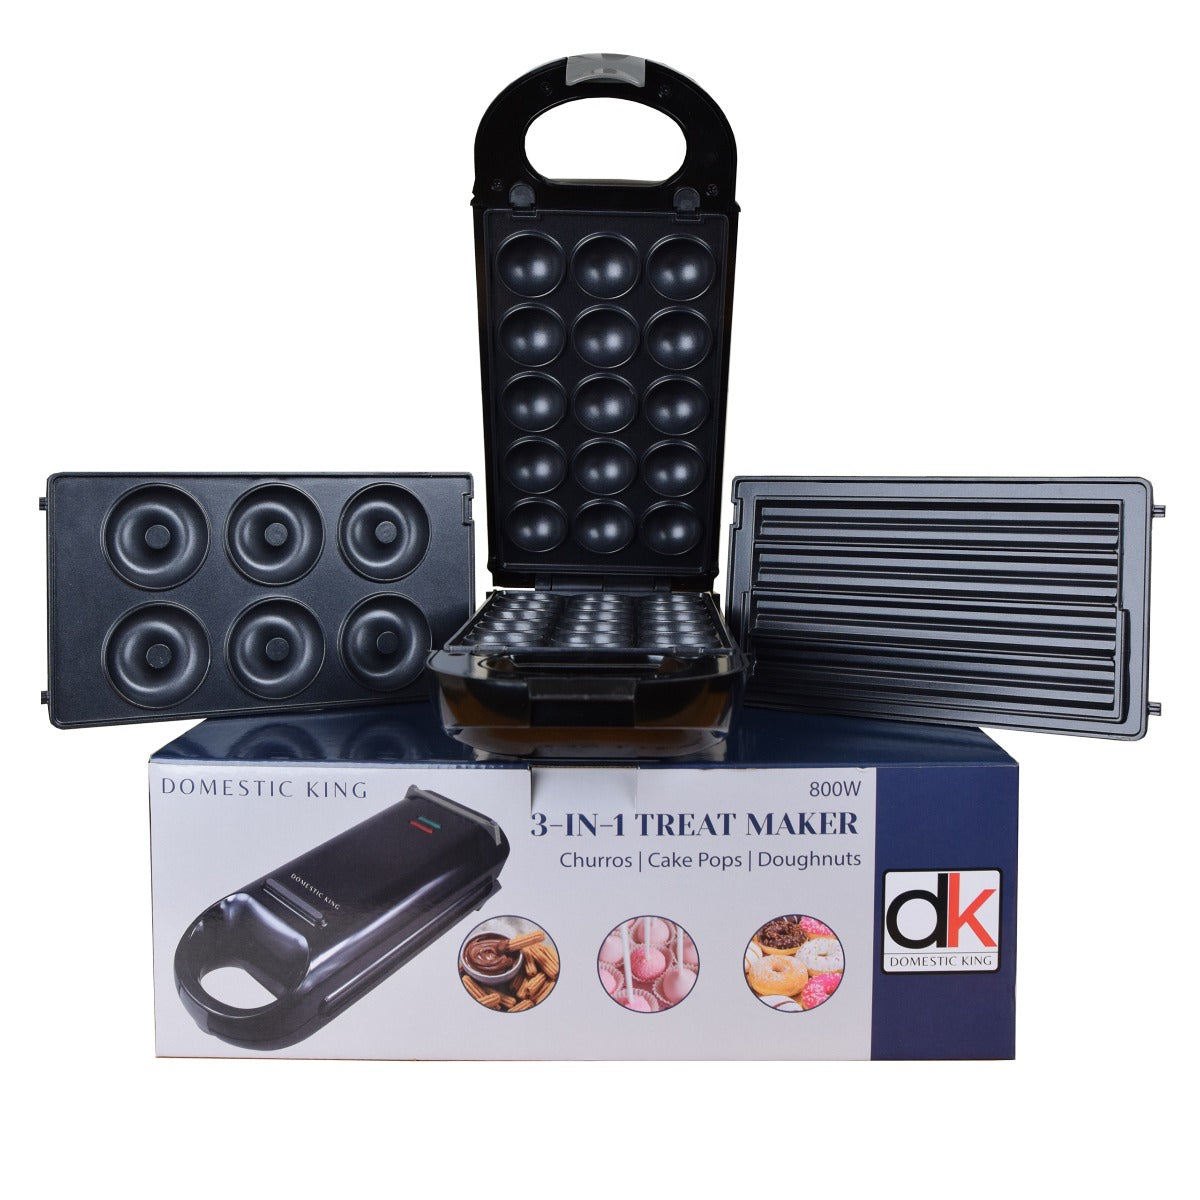 Domestic King 3-IN-1 Treat Maker- DK18032